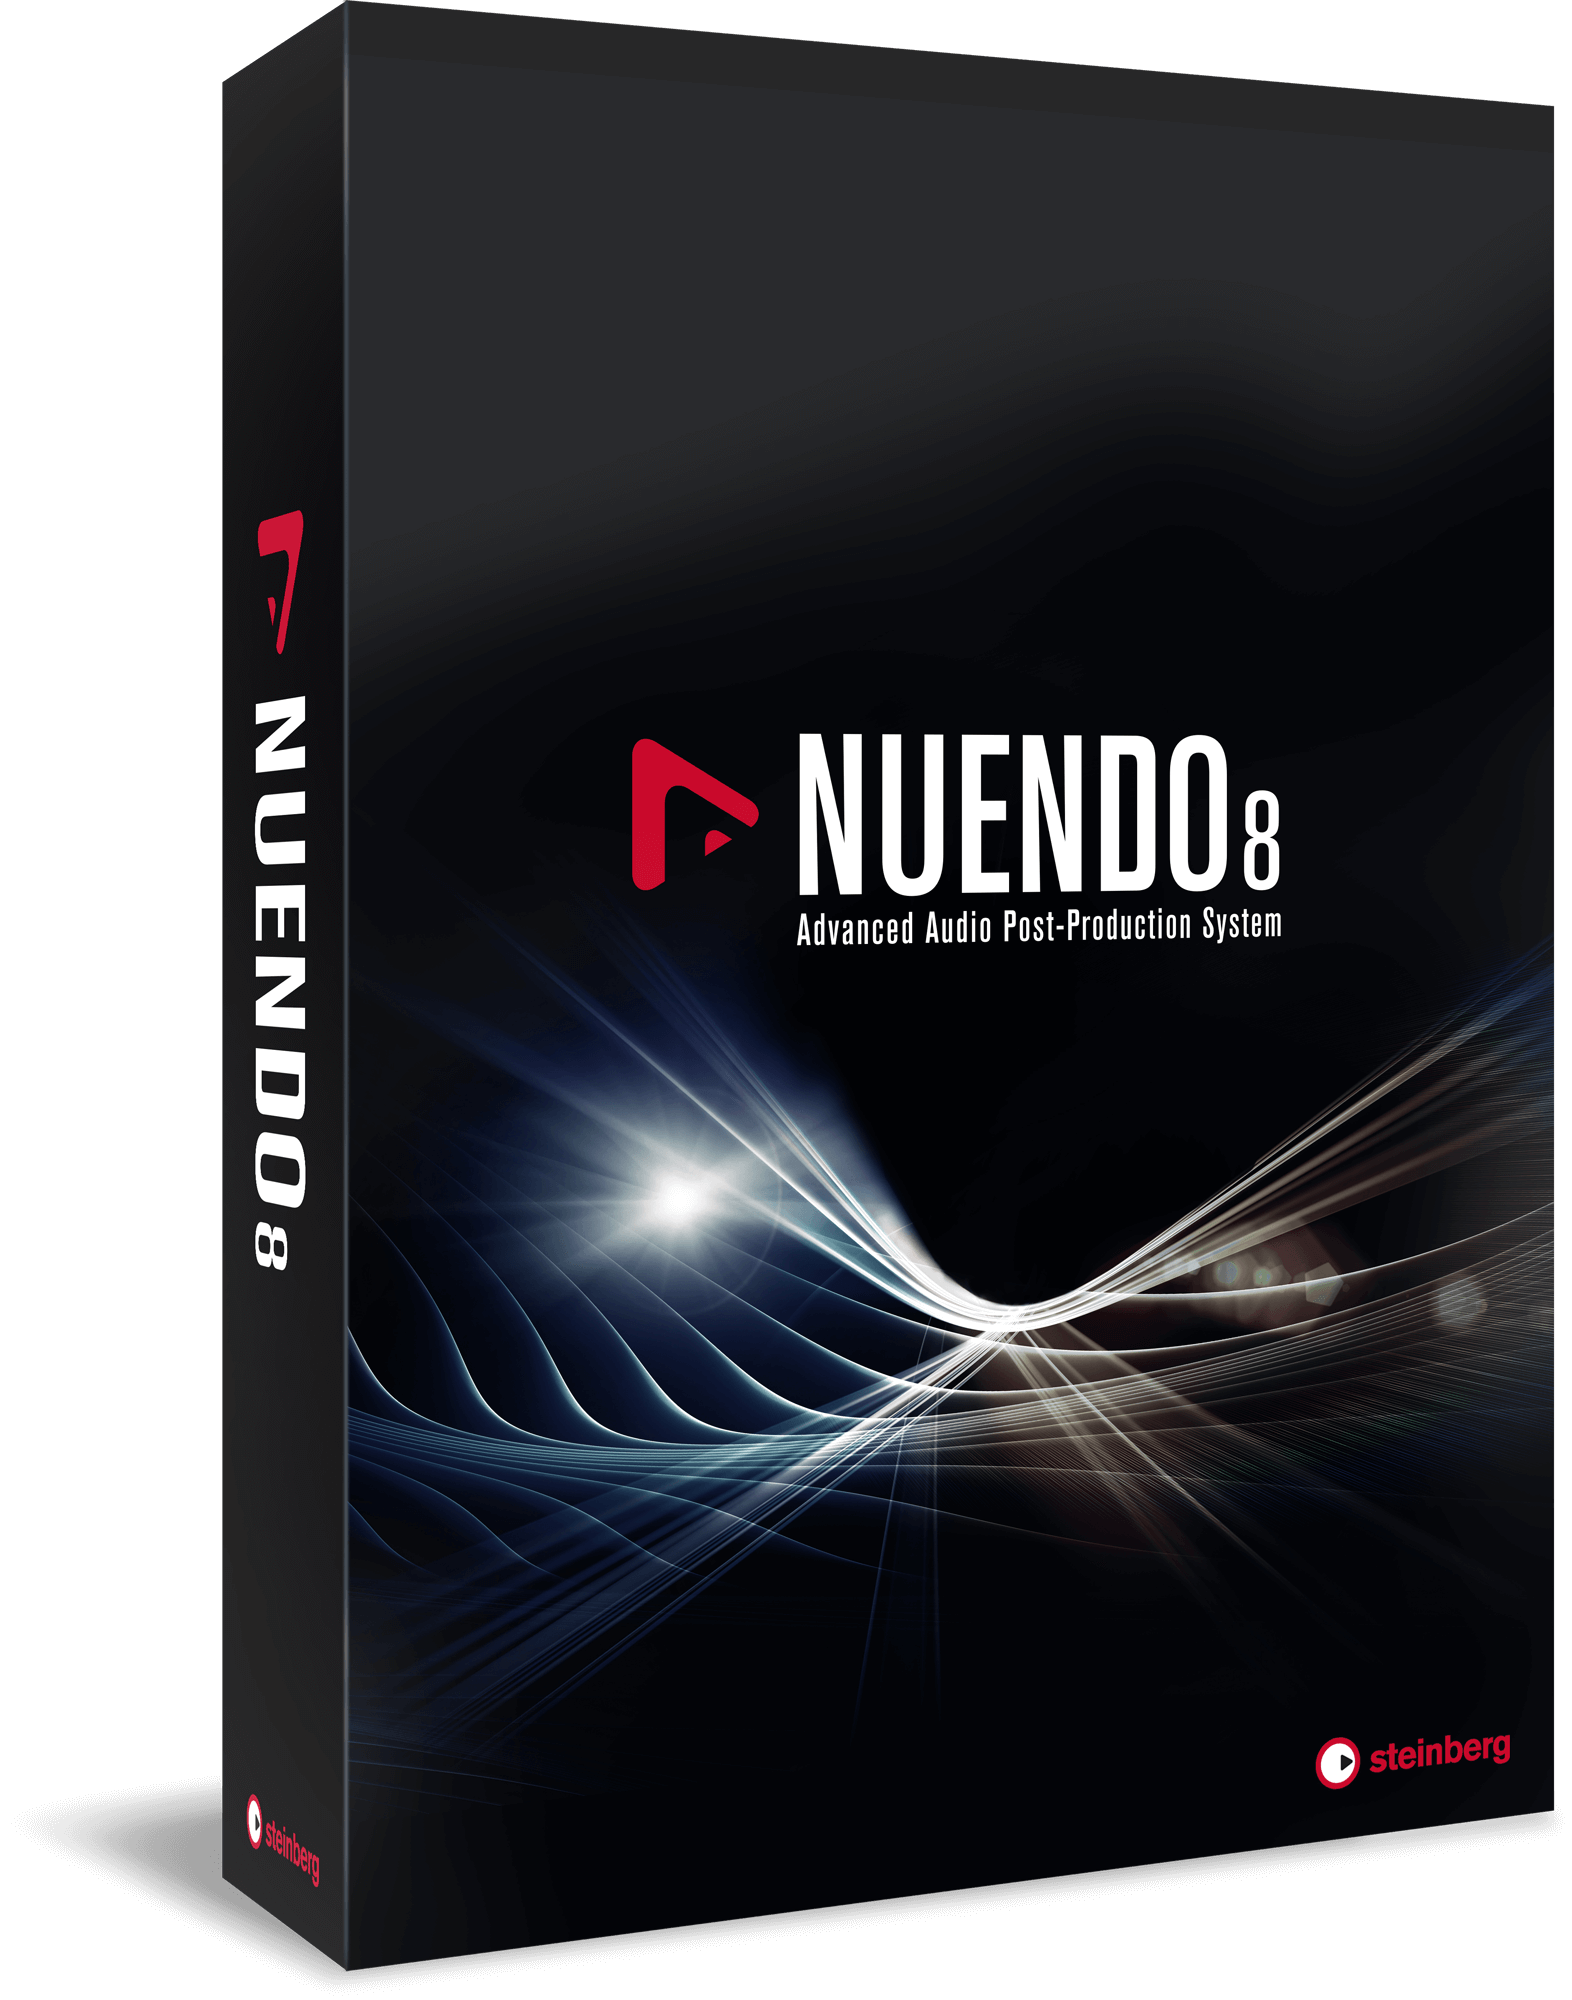 Steinberg Announces Nuendo 8